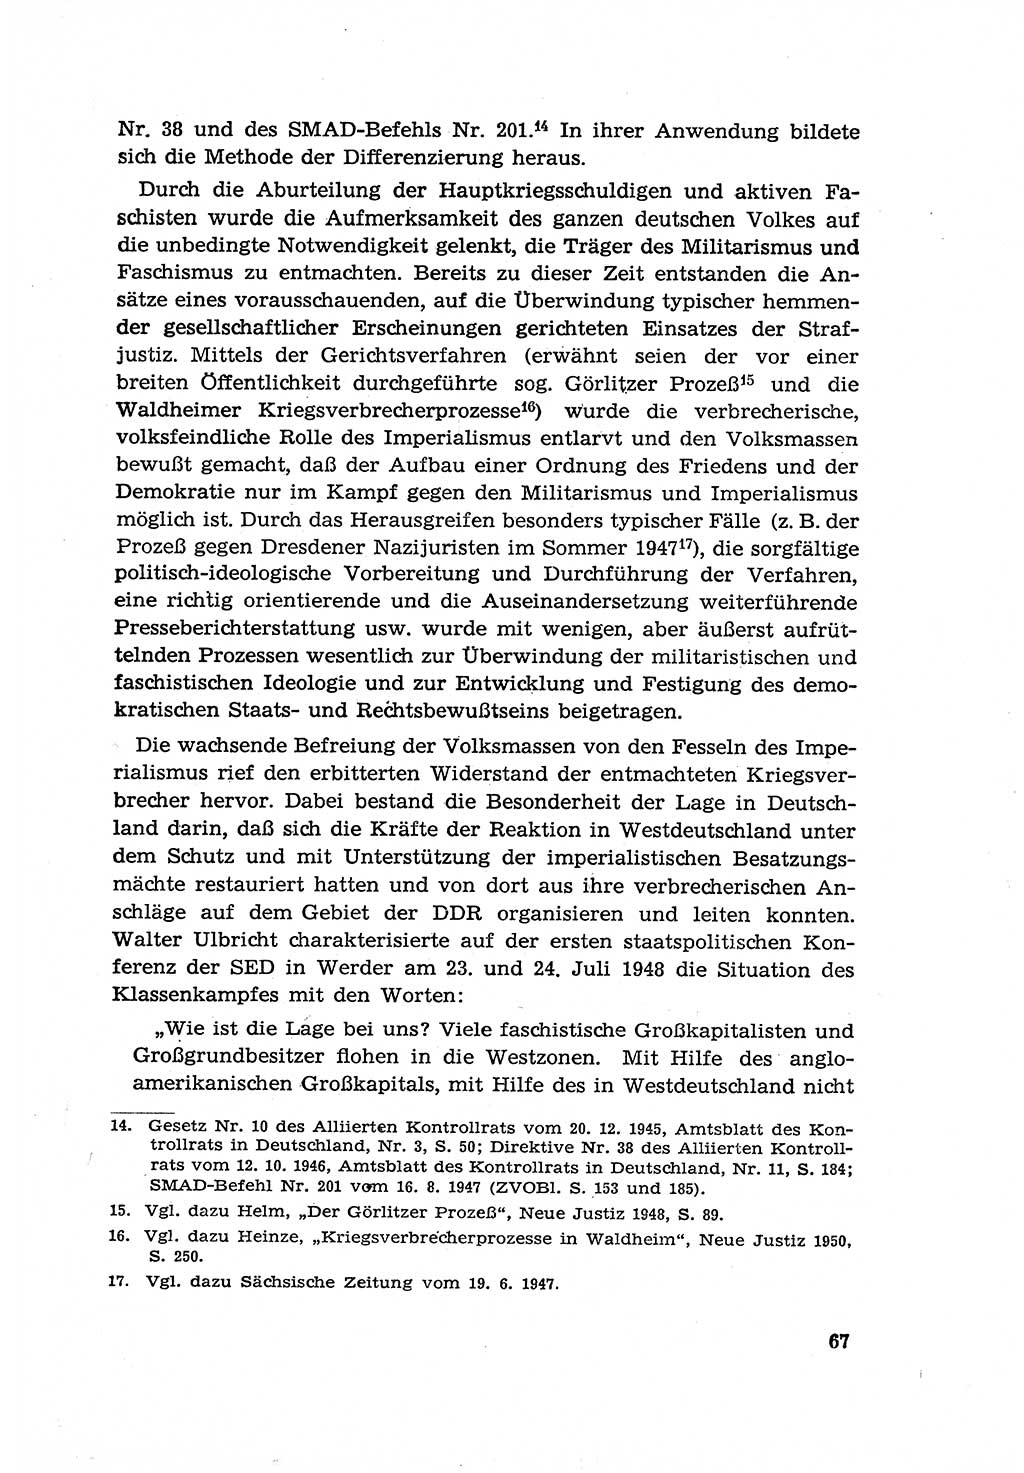 Zur Entwicklung des sozialistischen Strafrechts der Deutschen Demokratischen Republik (DDR) 1960, Seite 67 (Entw. soz. Strafr. DDR 1960, S. 67)